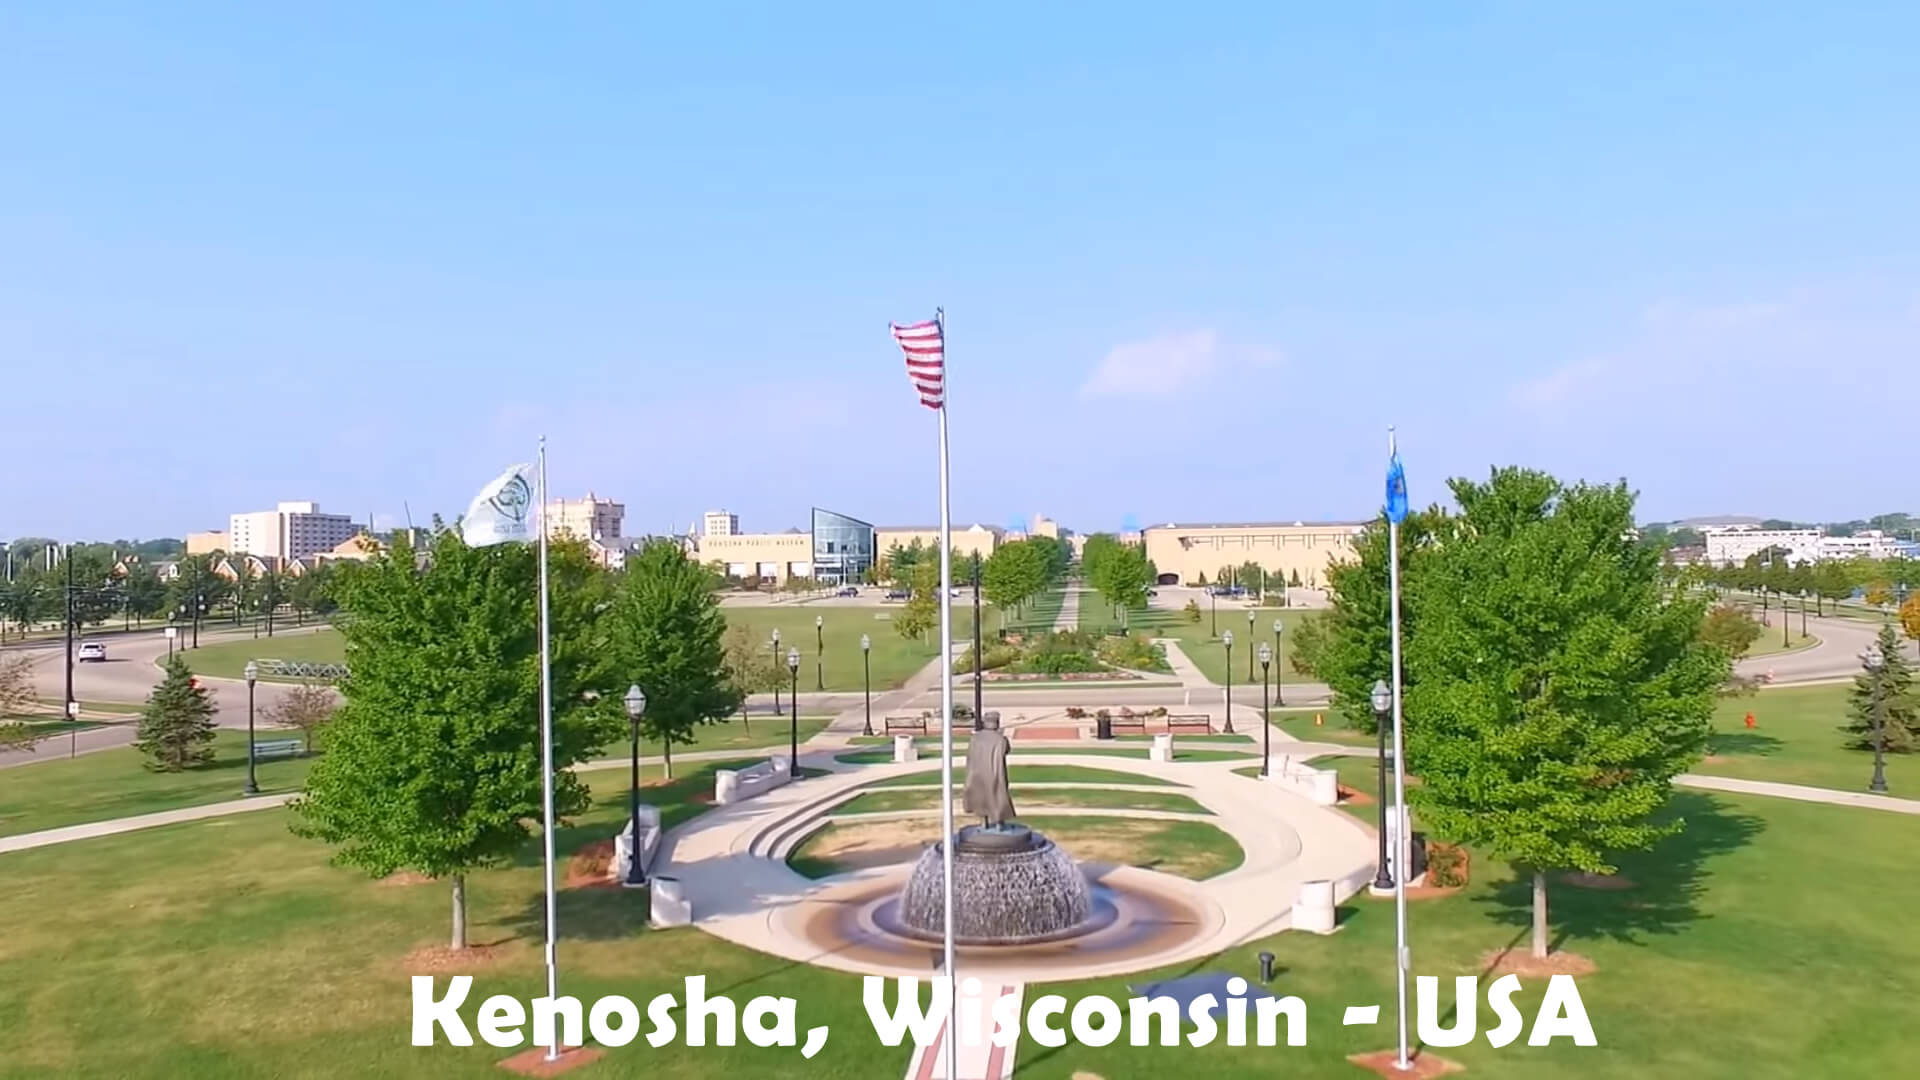 Kenosha Wisconsin - USA